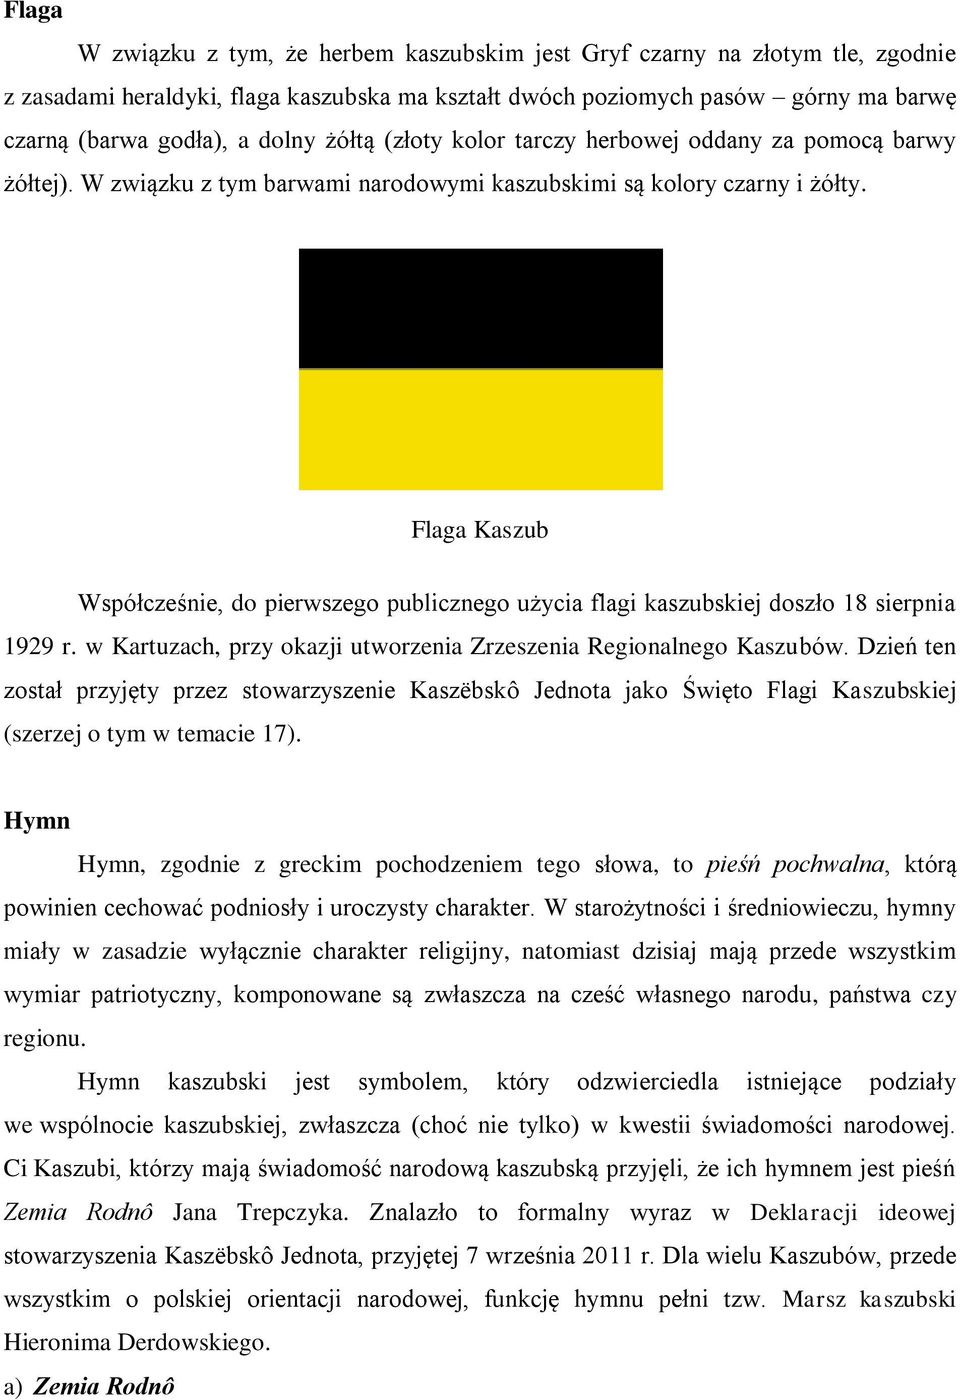 Flaga Kaszub Współcześnie, do pierwszego publicznego użycia flagi kaszubskiej doszło 18 sierpnia 1929 r. w Kartuzach, przy okazji utworzenia Zrzeszenia Regionalnego Kaszubów.